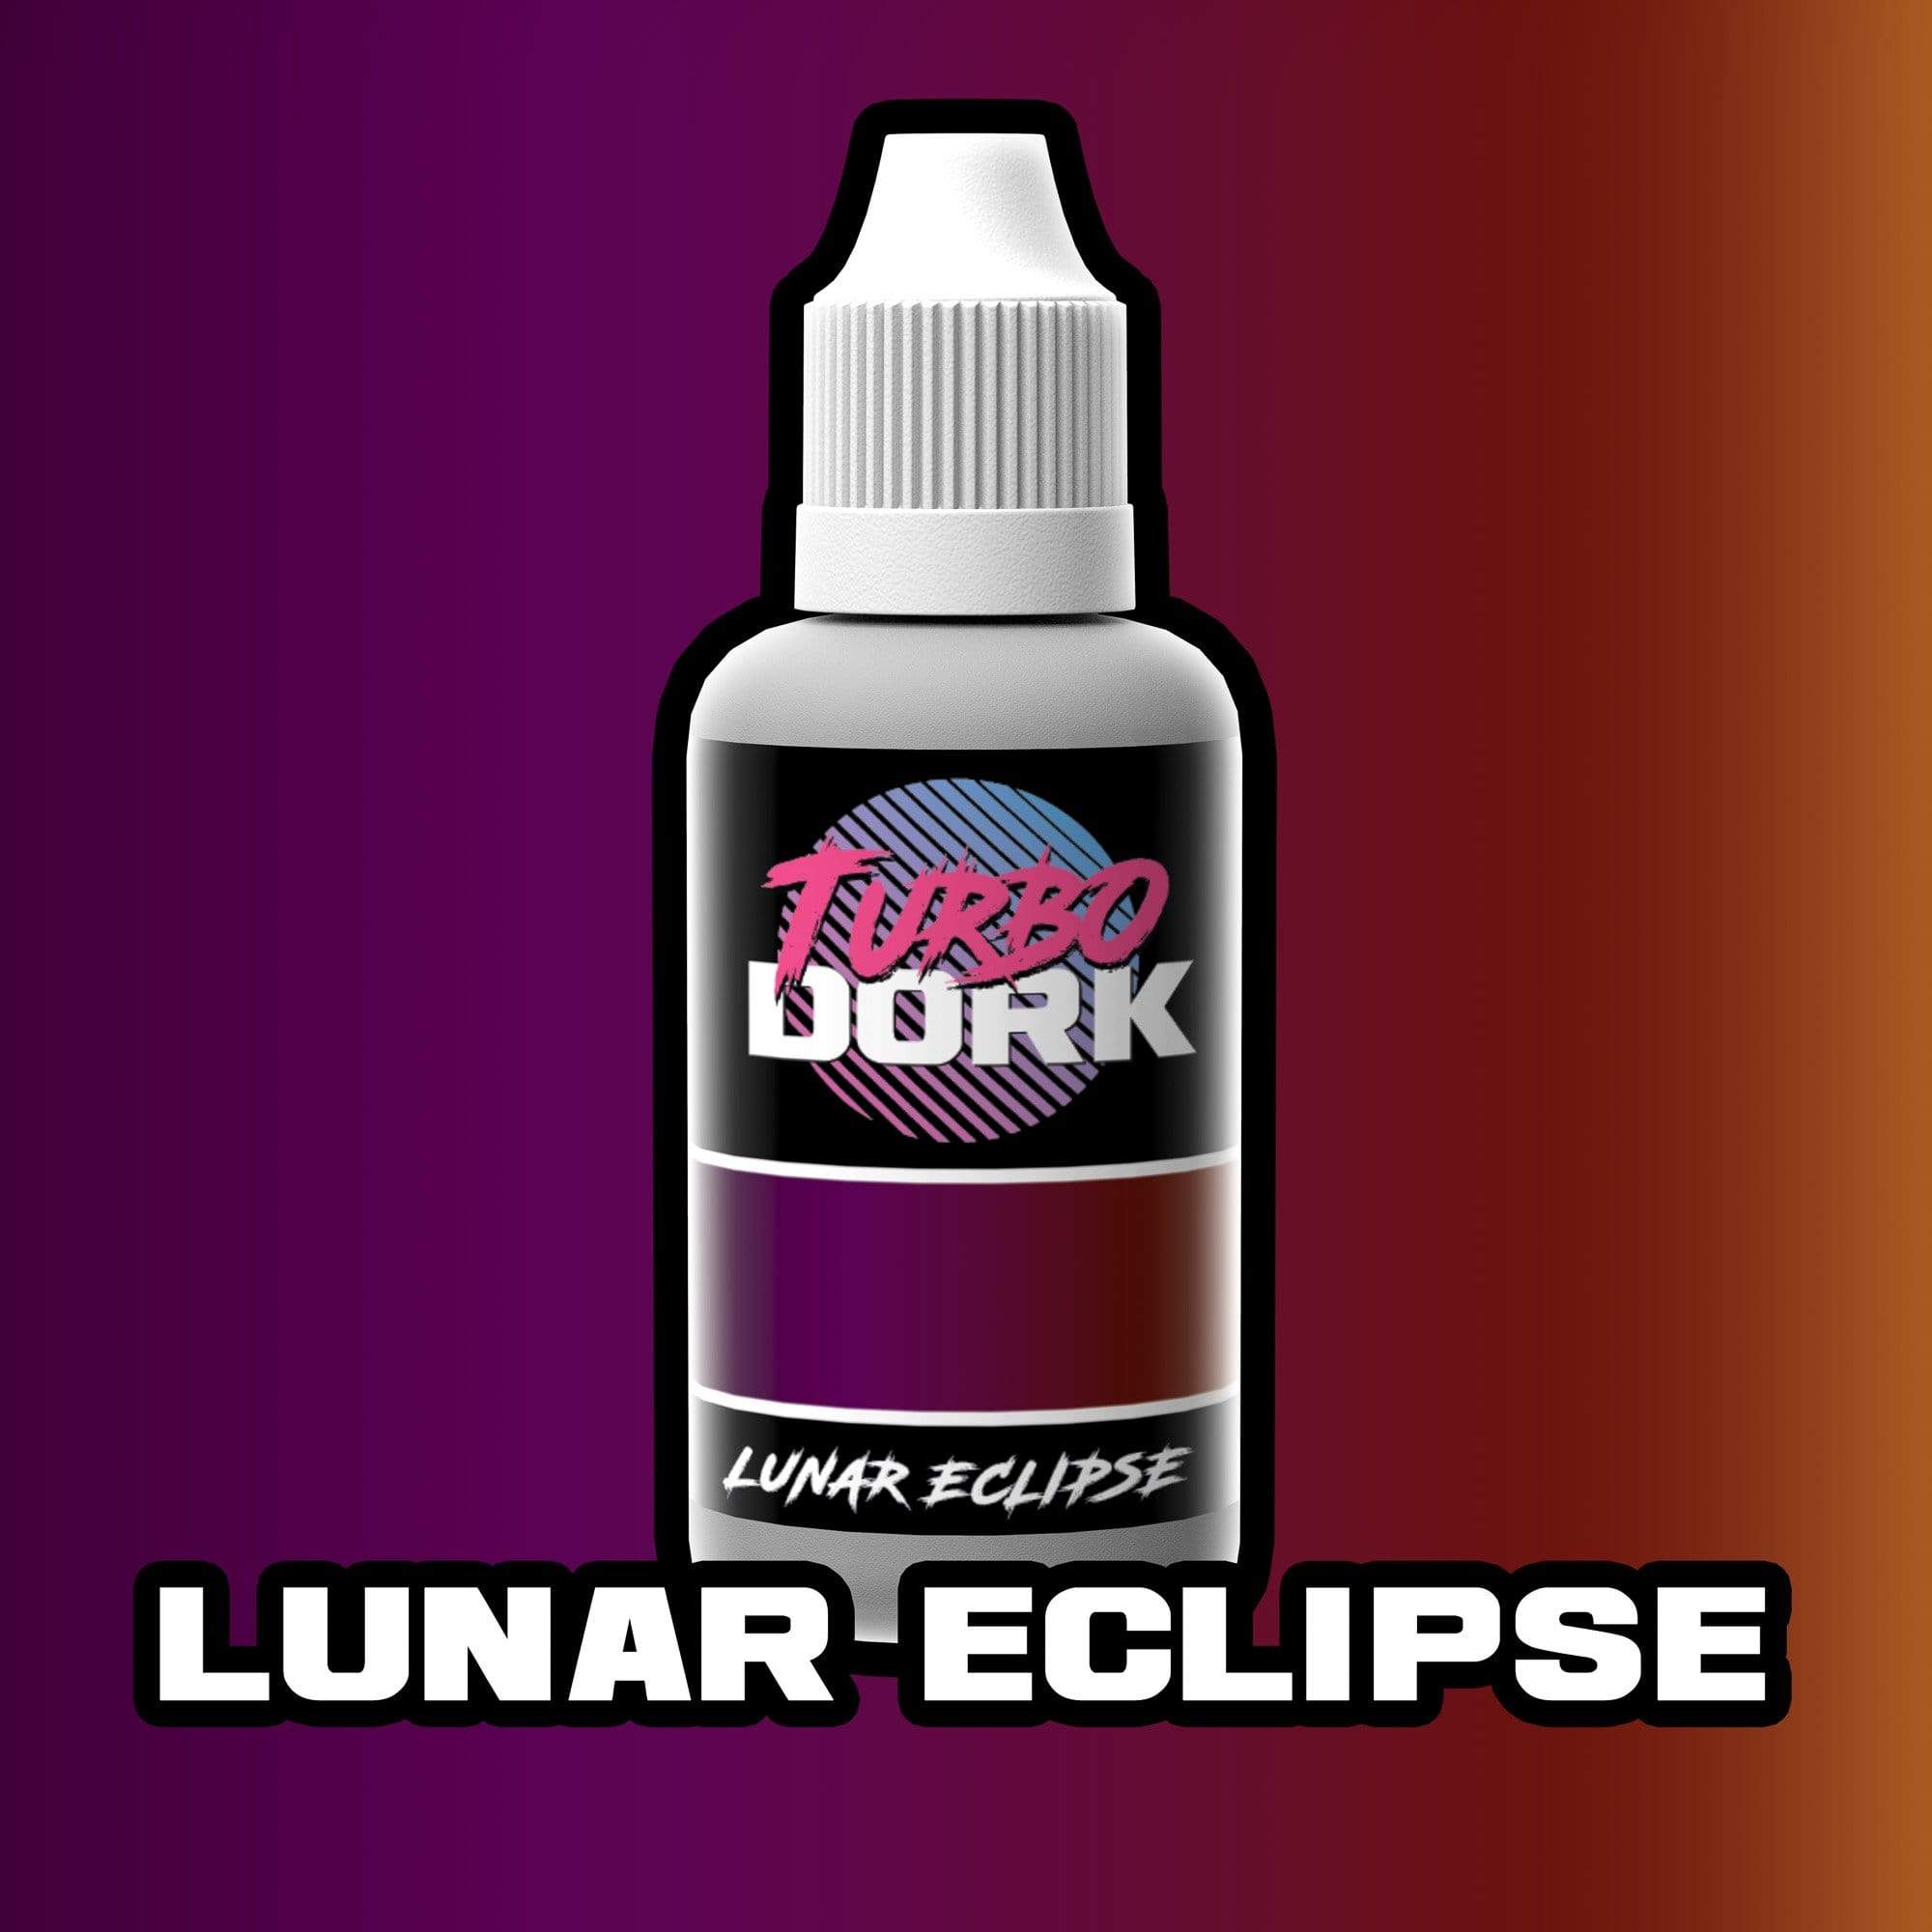 Lunar Eclipse Colorshift Acrylic Paint Turboshift Turbo Dork Exit 23 Games Lunar Eclipse Colorshift Acrylic Paint